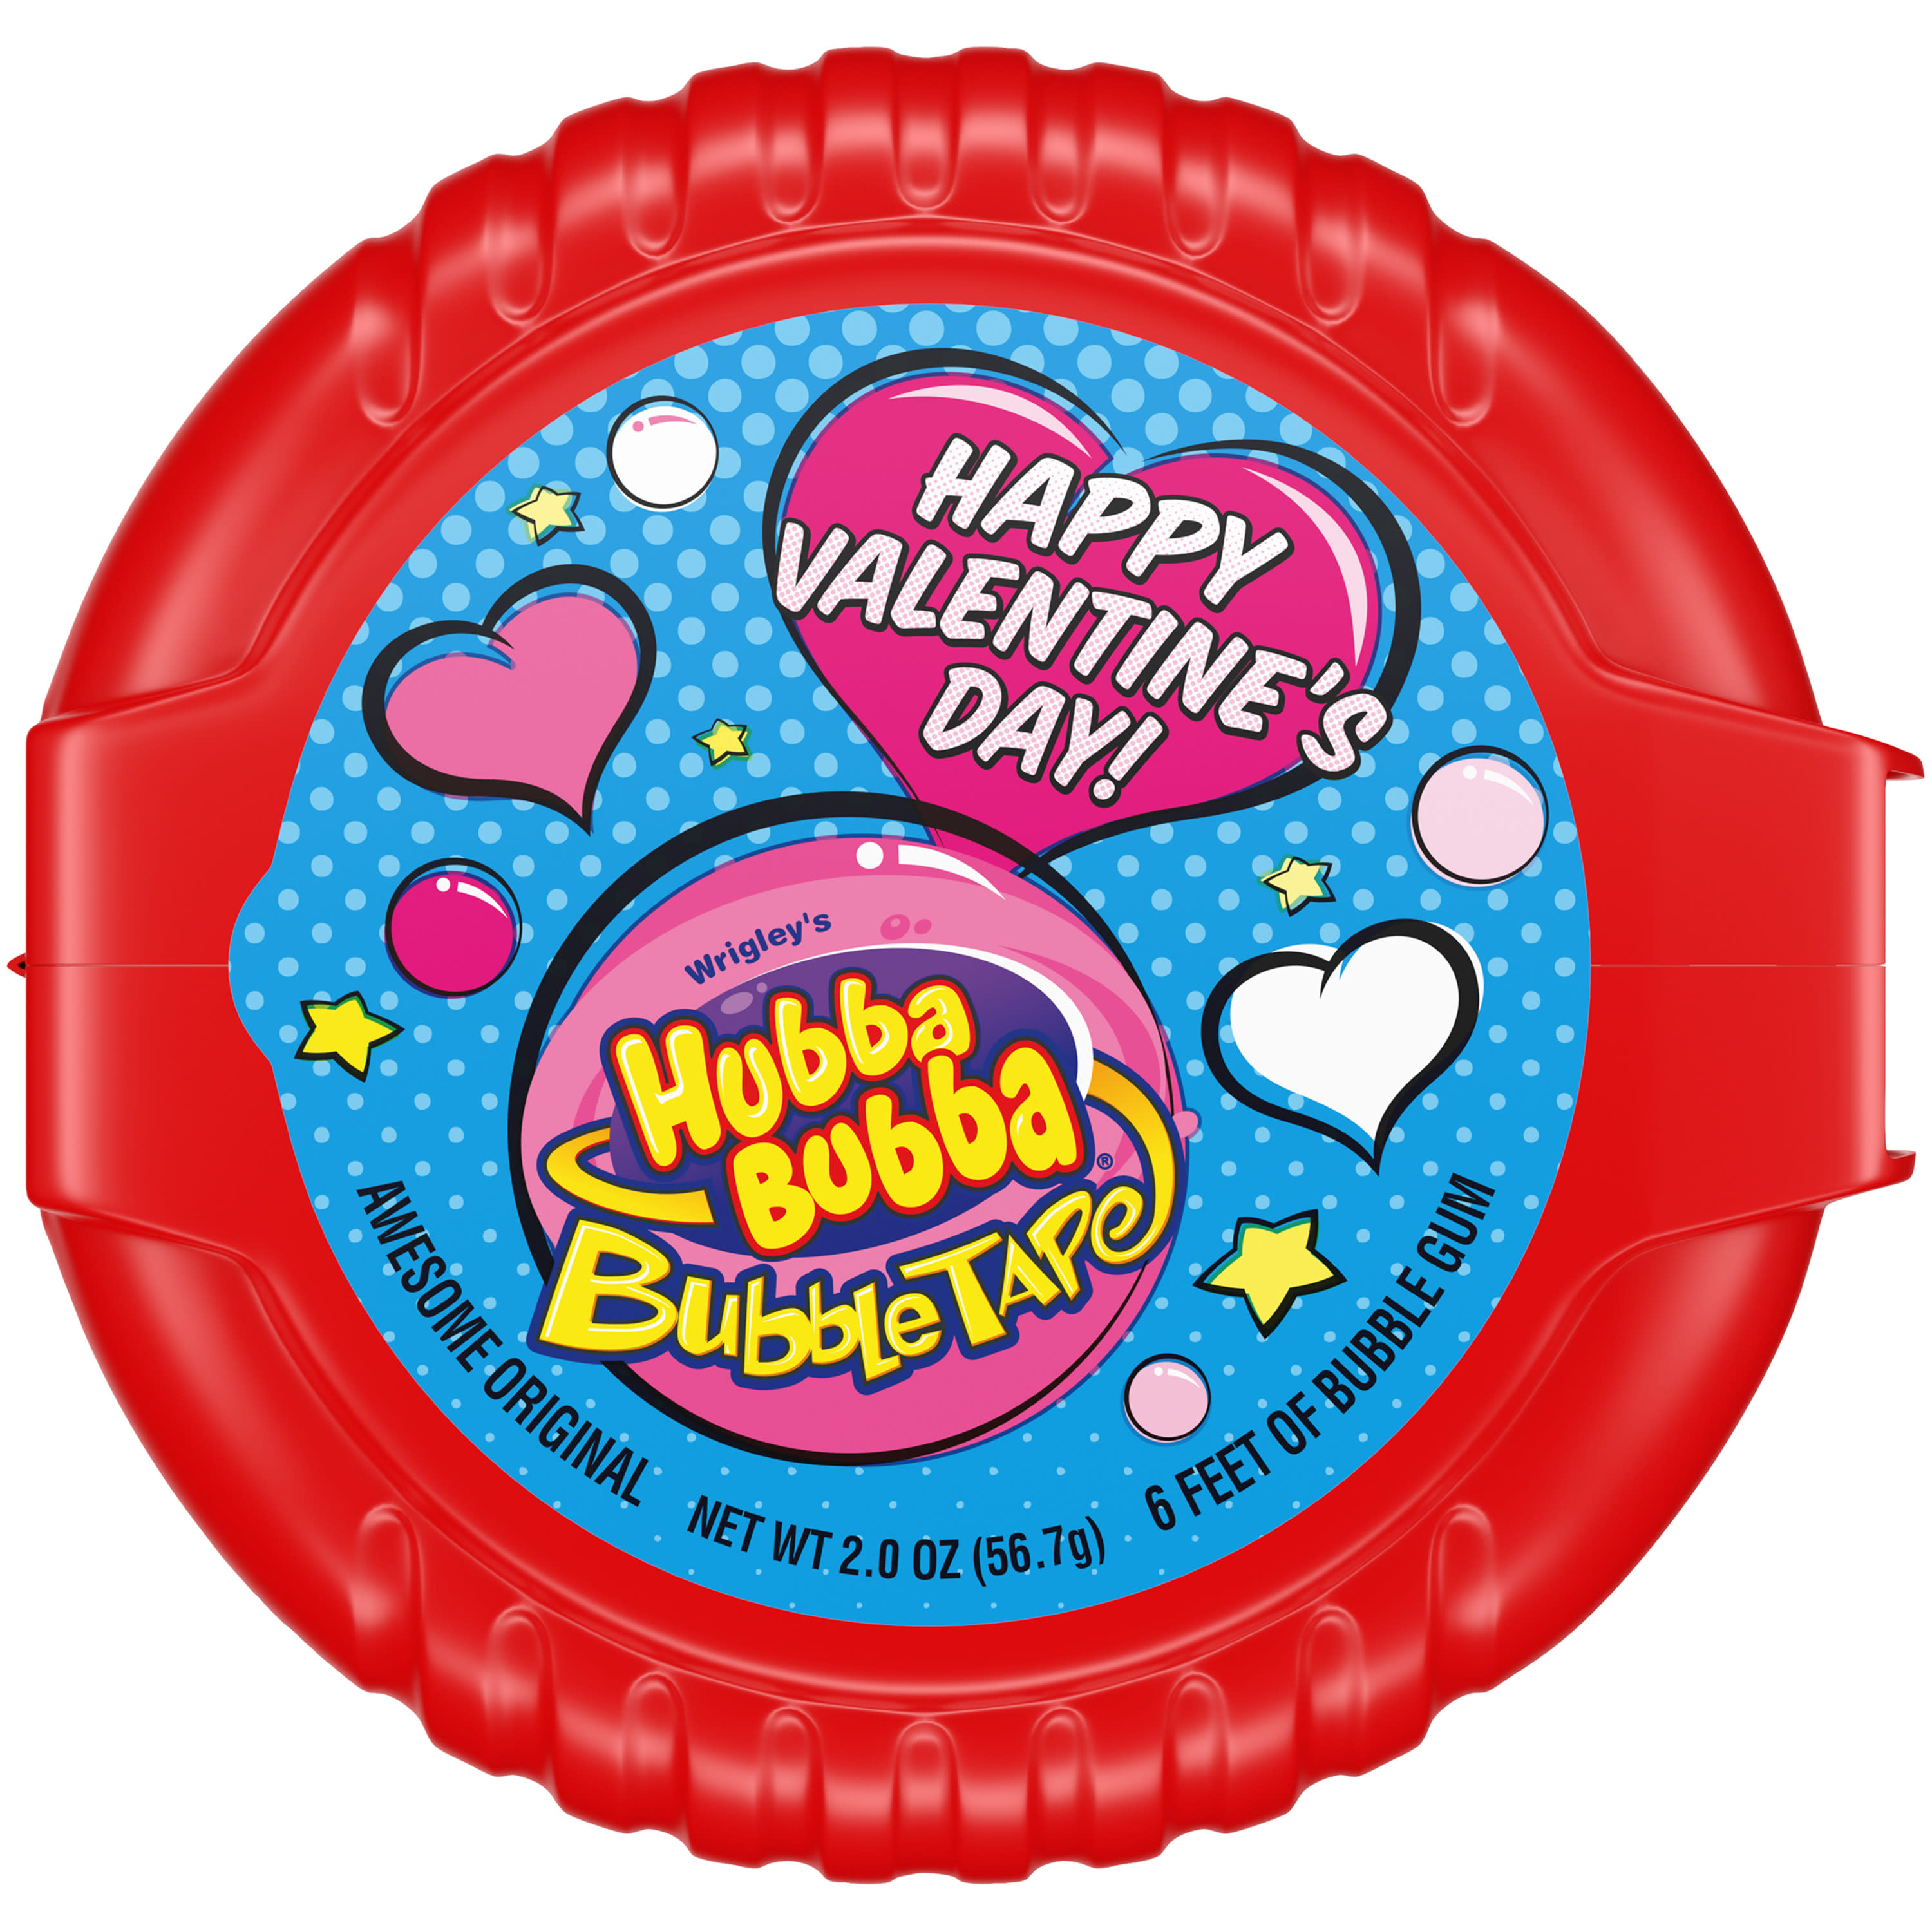 Hubba Bubba Bubble Tape Chewing Gum, Valentine's Bubble Gum - 2 oz - image 1 of 9